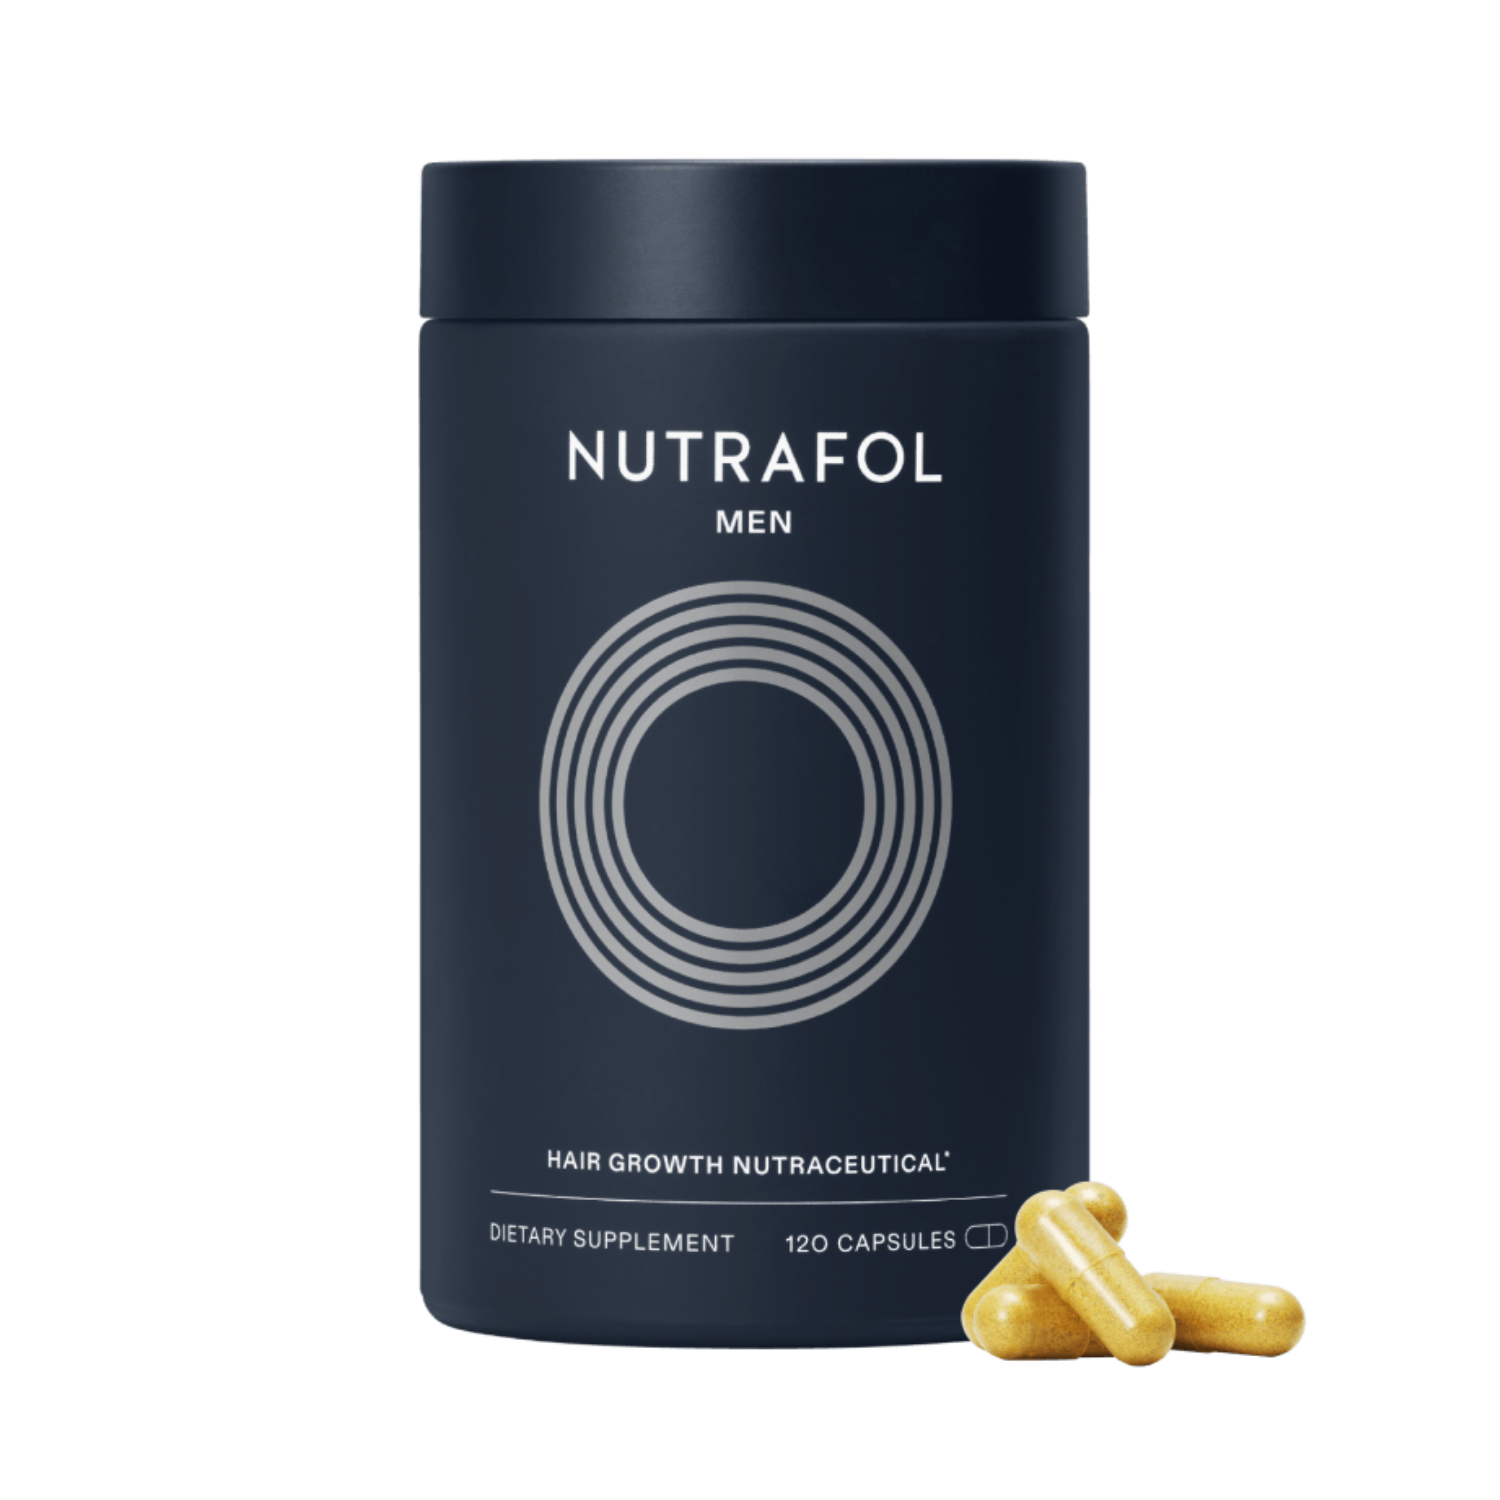 Nutrafol: Men's Hair Growth Nutraceutical